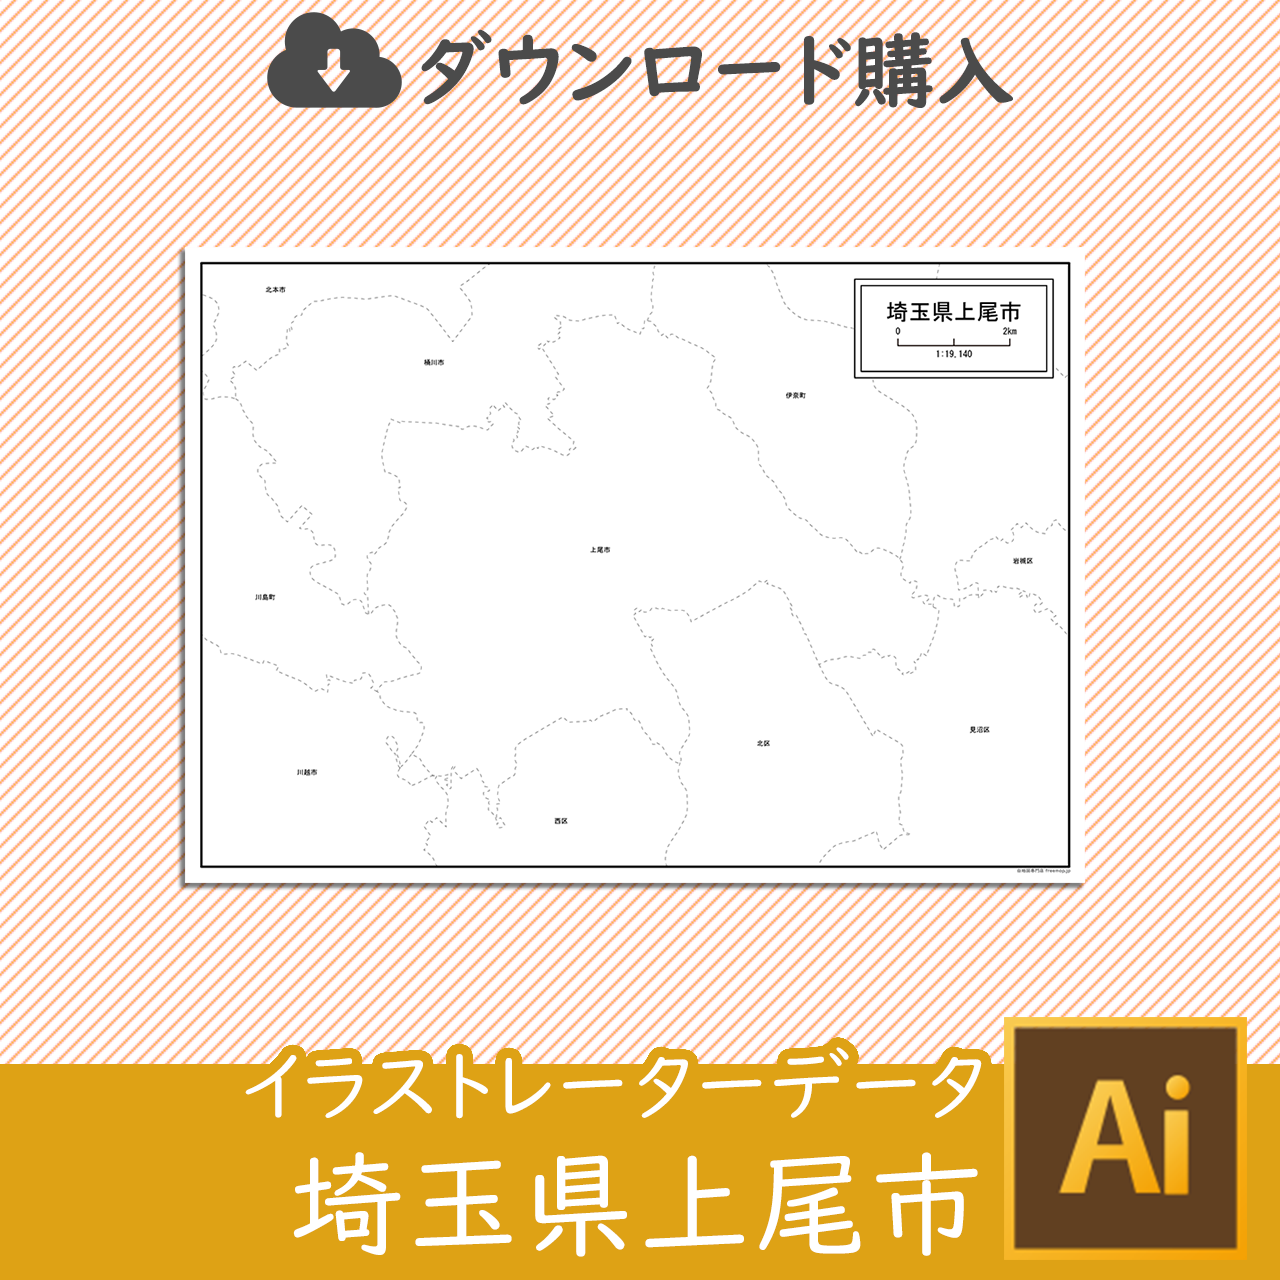 上尾市のaiデータのサムネイル画像